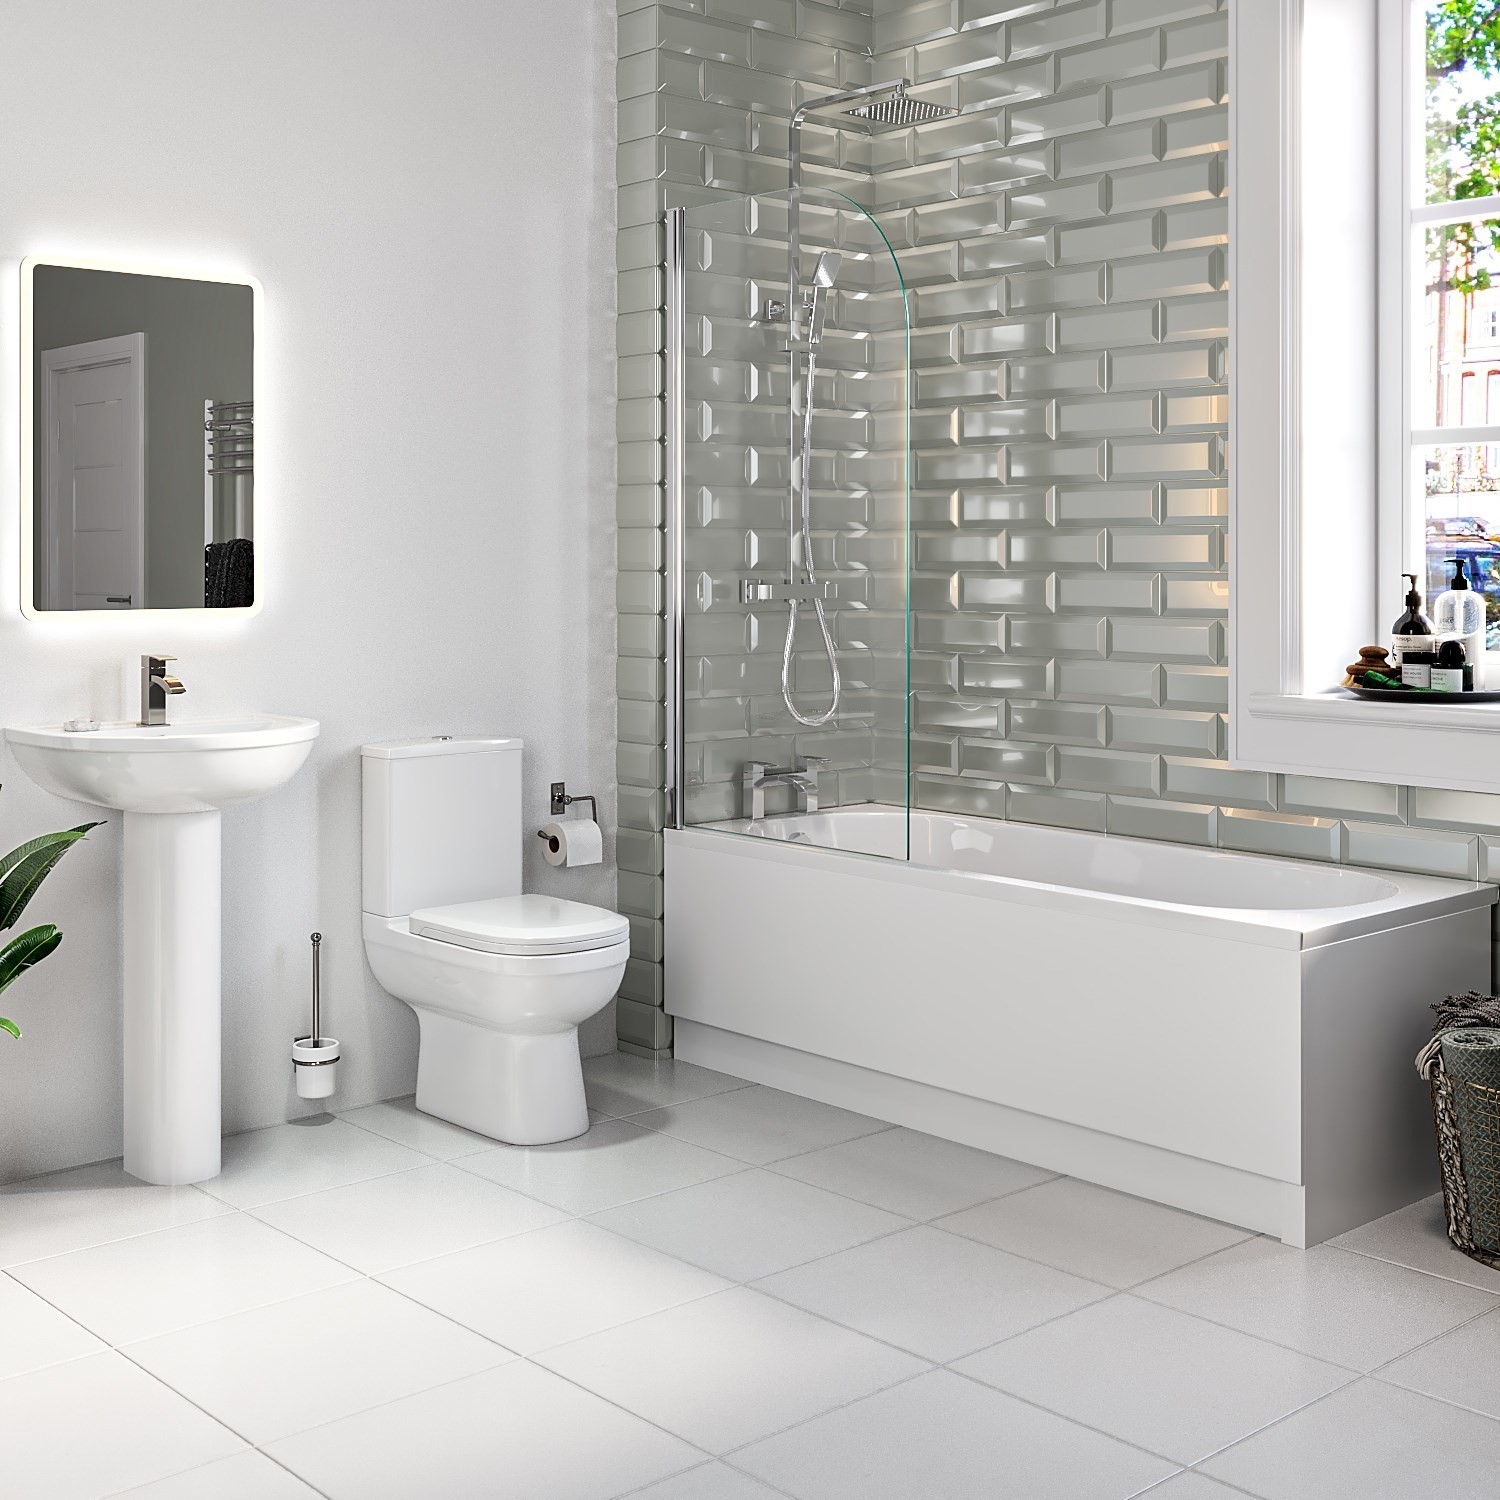 1800mm Shower Bath Suite with Toilet Basin & Panels - Alton - Better ...